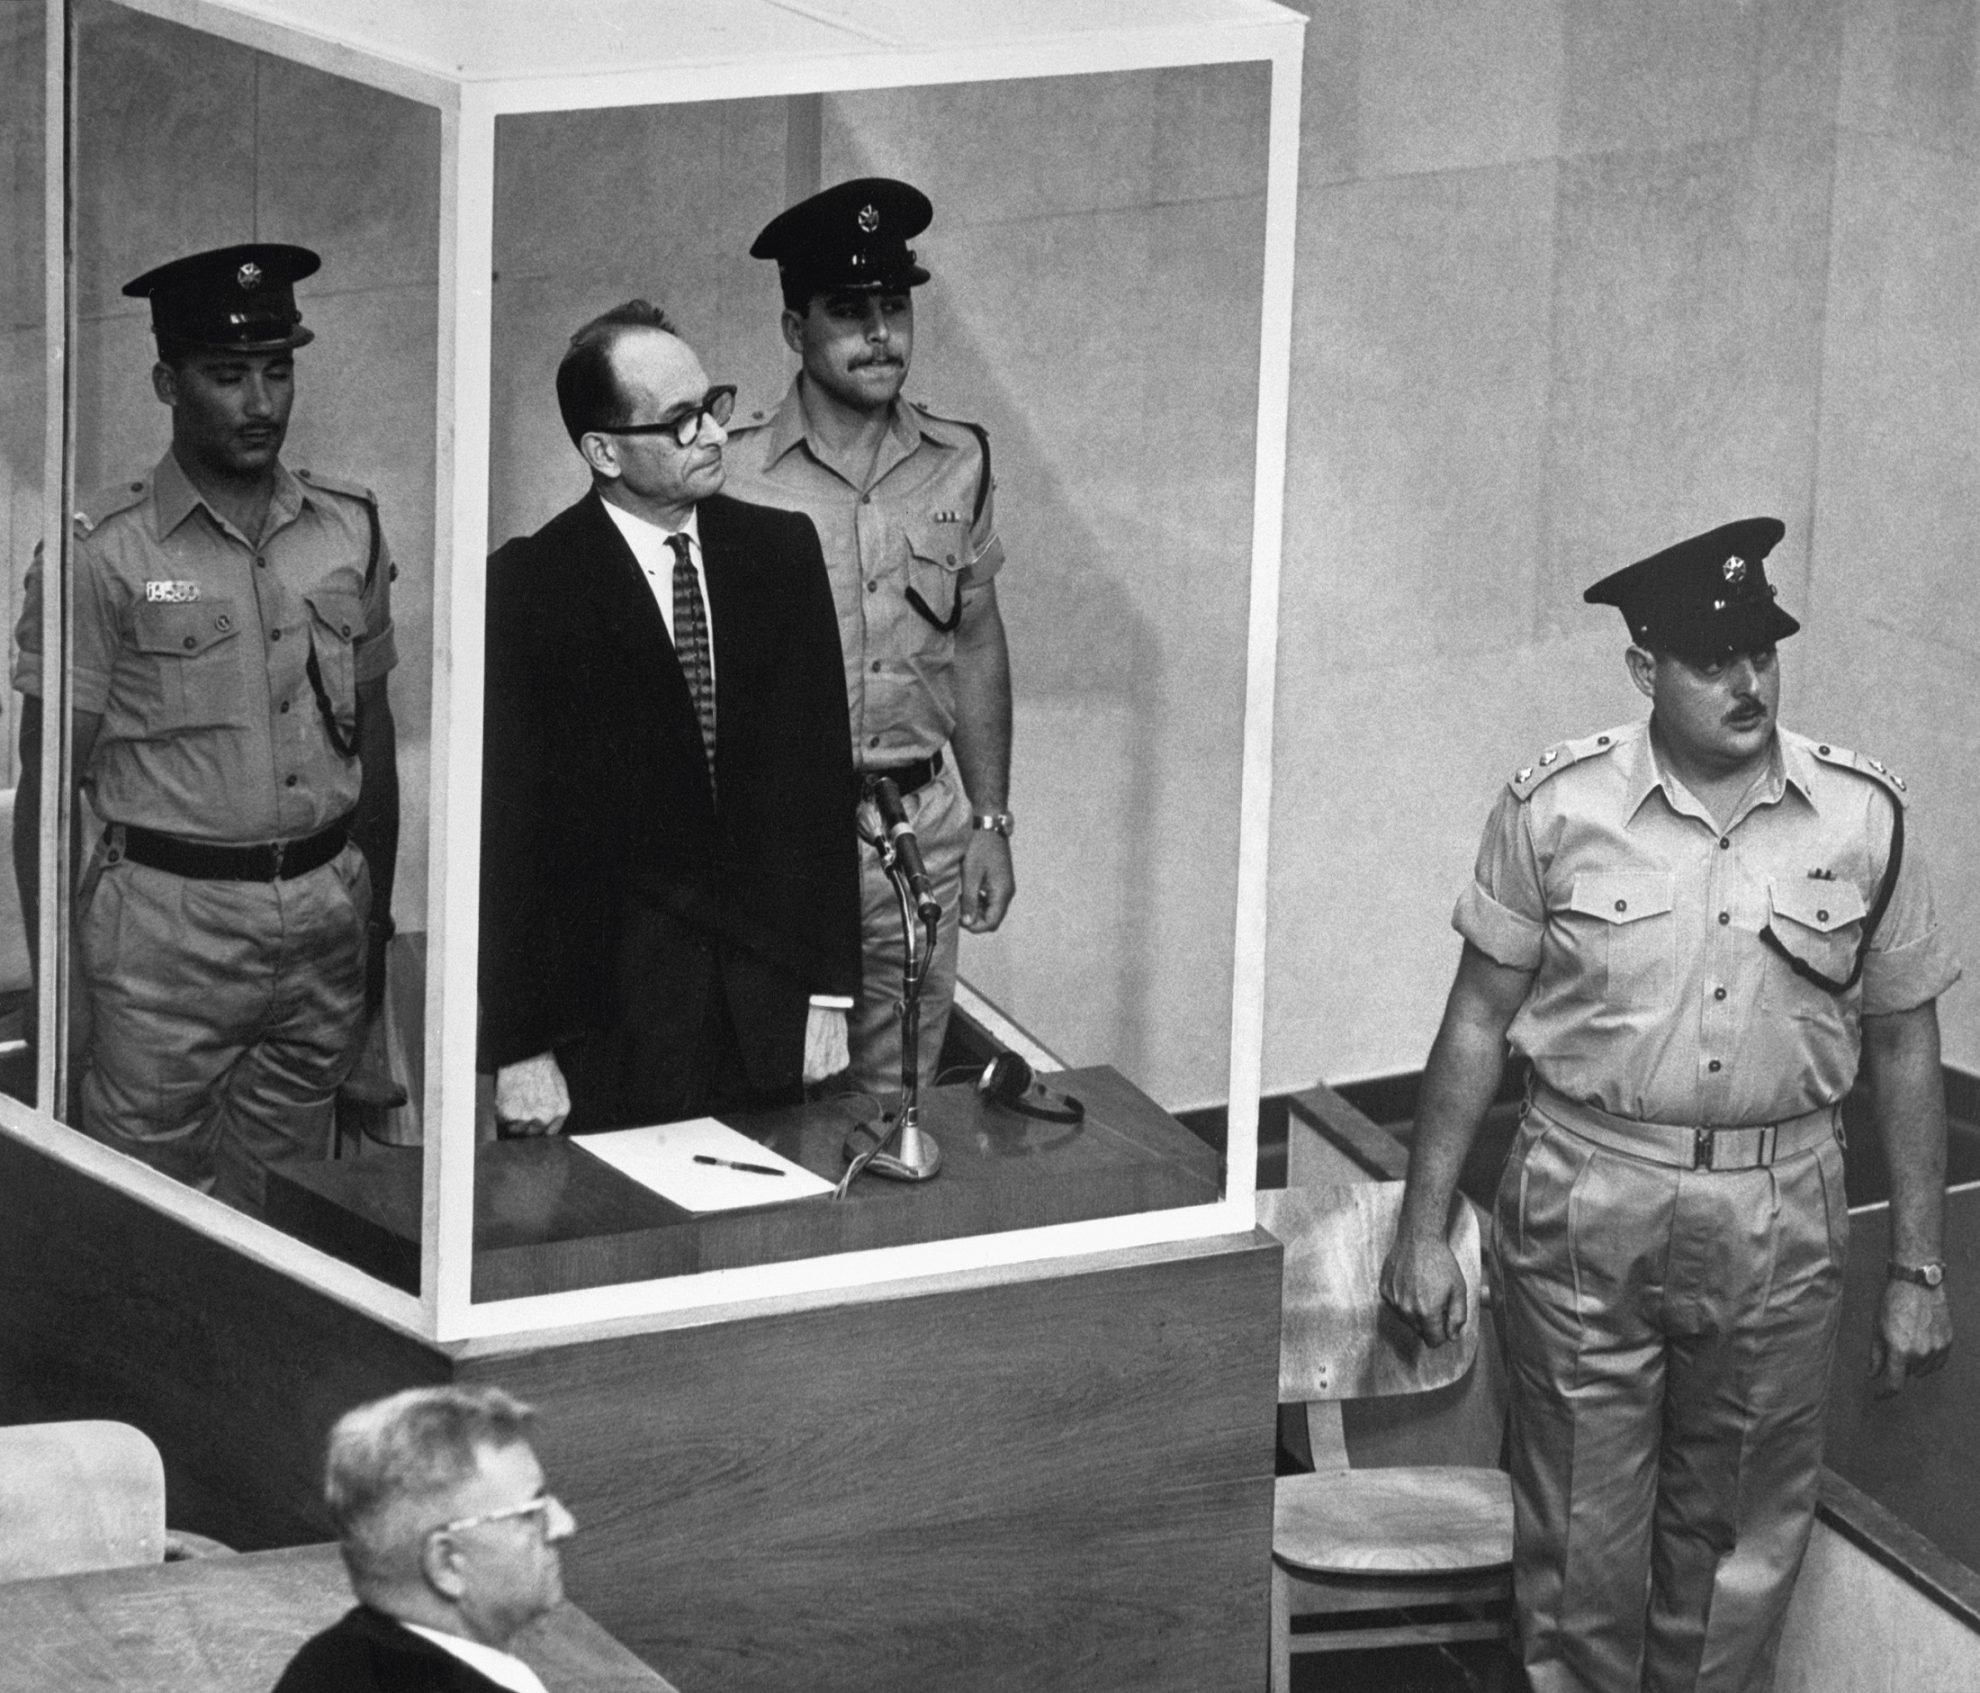 Nuo Adolfo Eichmanno iki Vladimiro Putino: kodėl vidutinybės padaro šiurpiausius nusikaltimus?